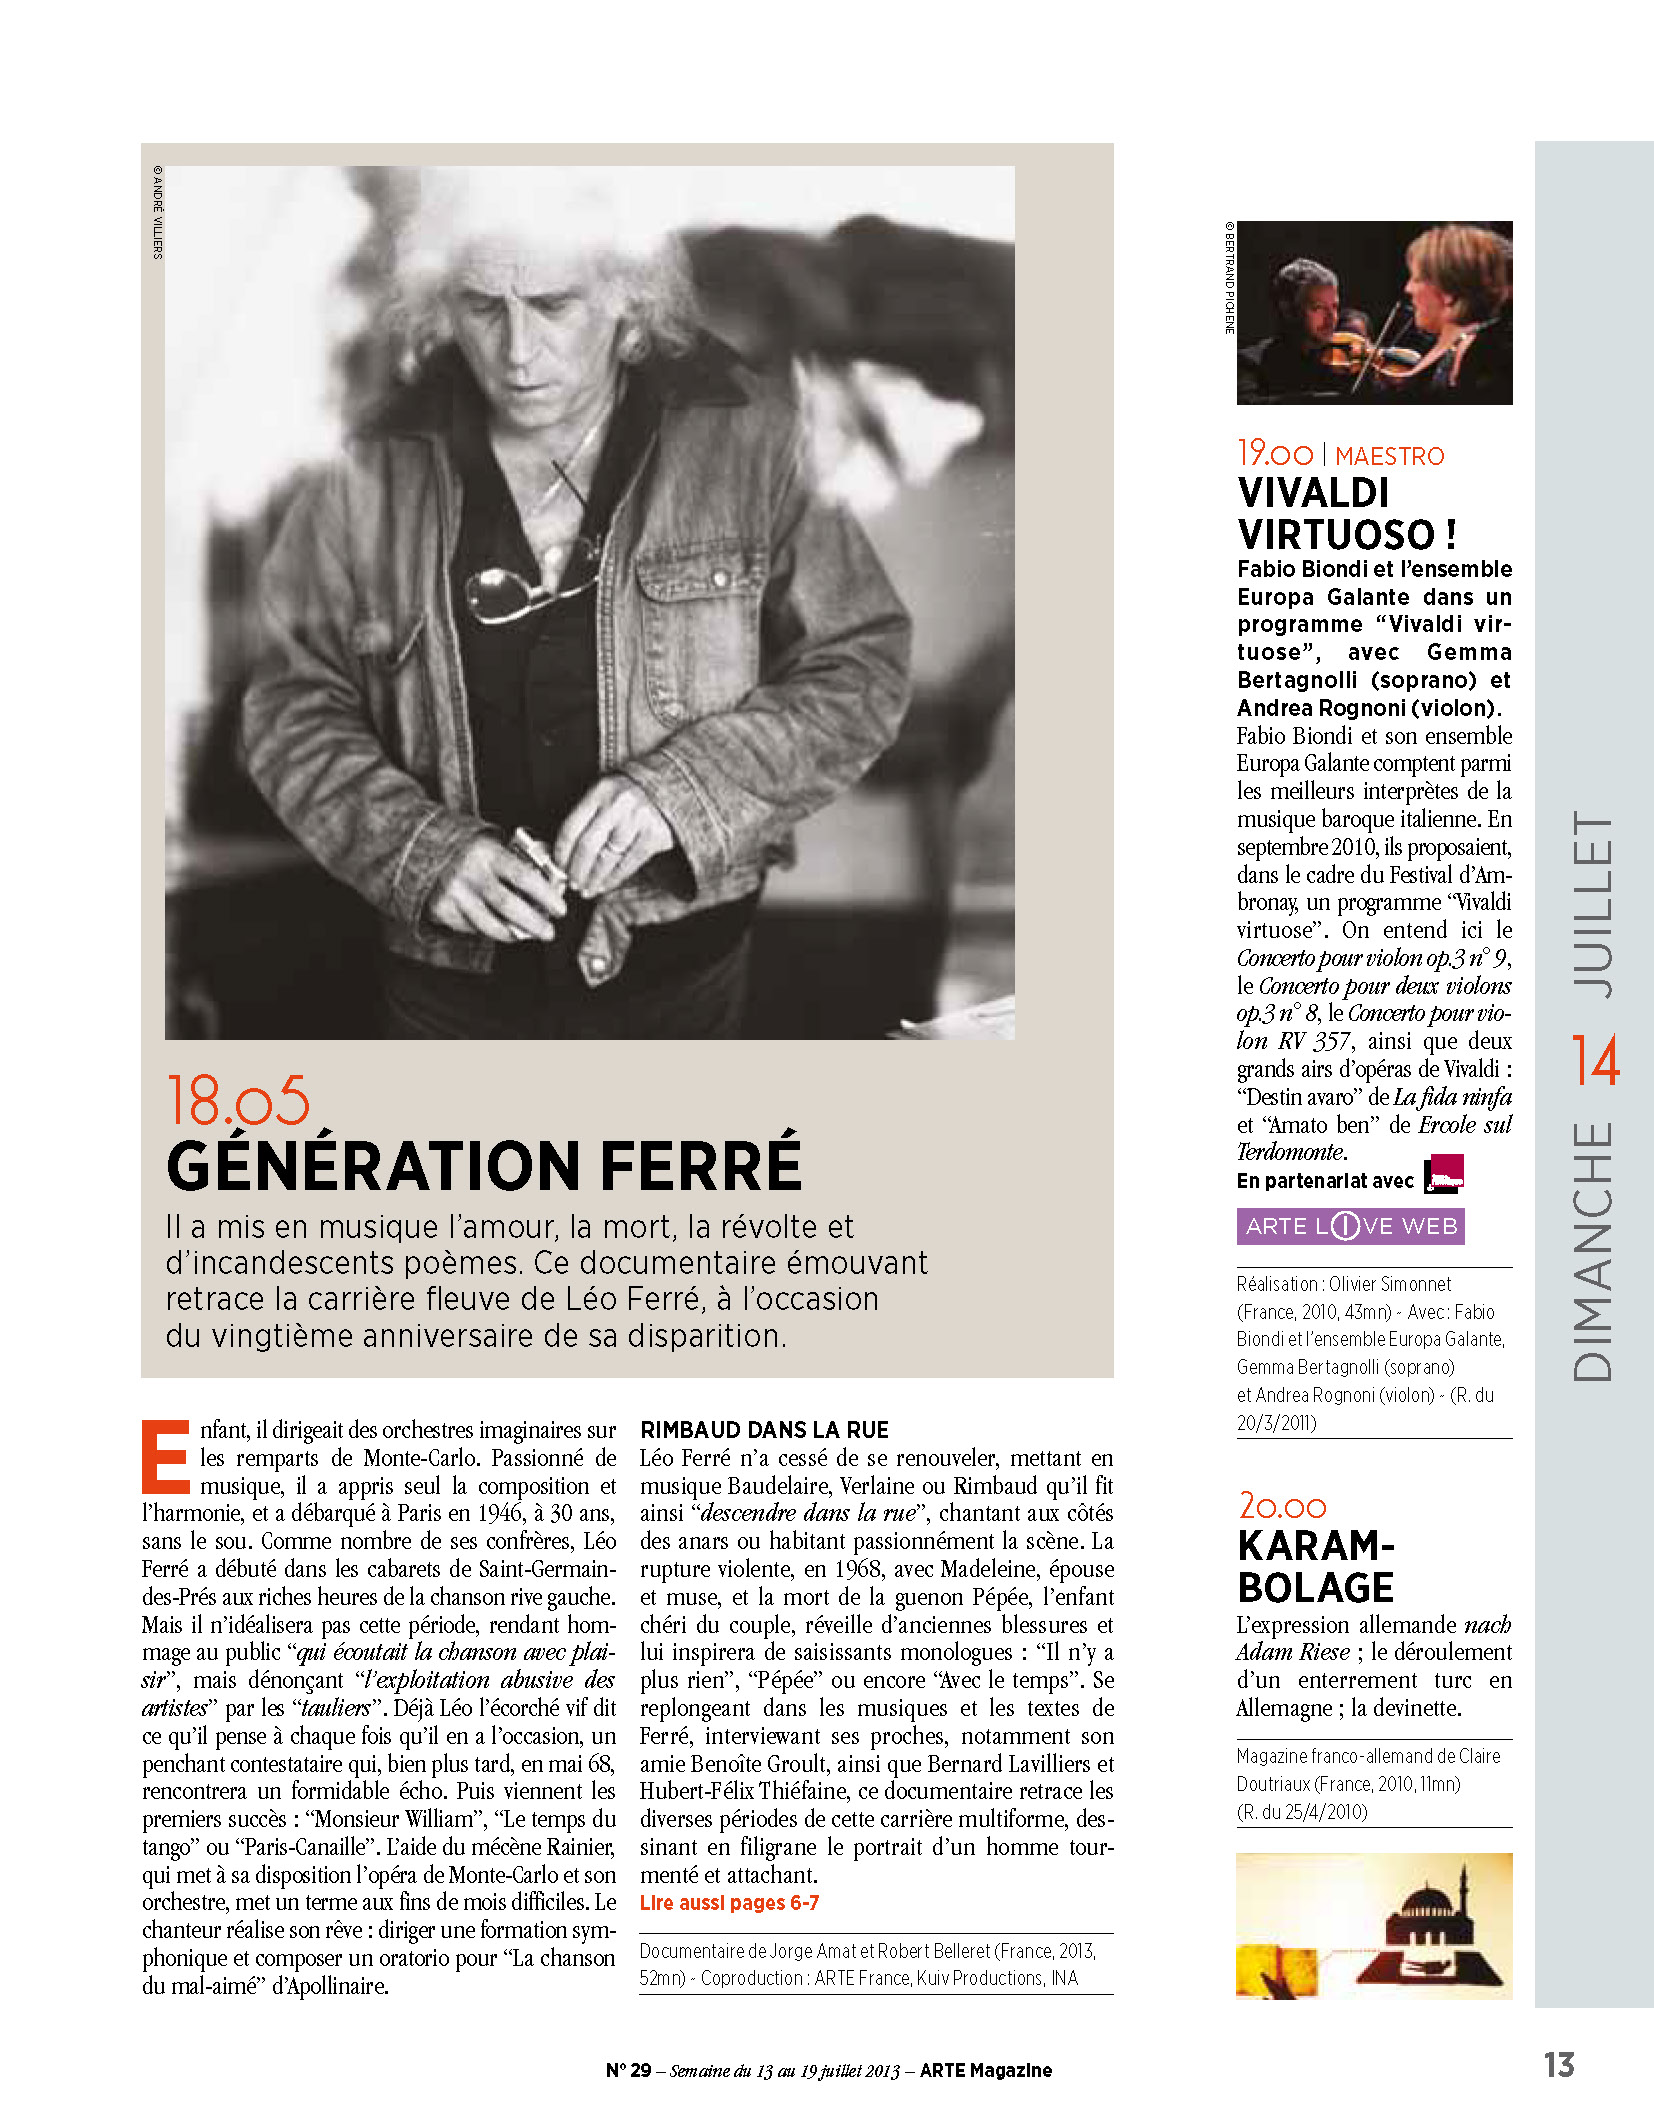  Arte Magazine du 13/07 au 19/2013 Génération Ferré